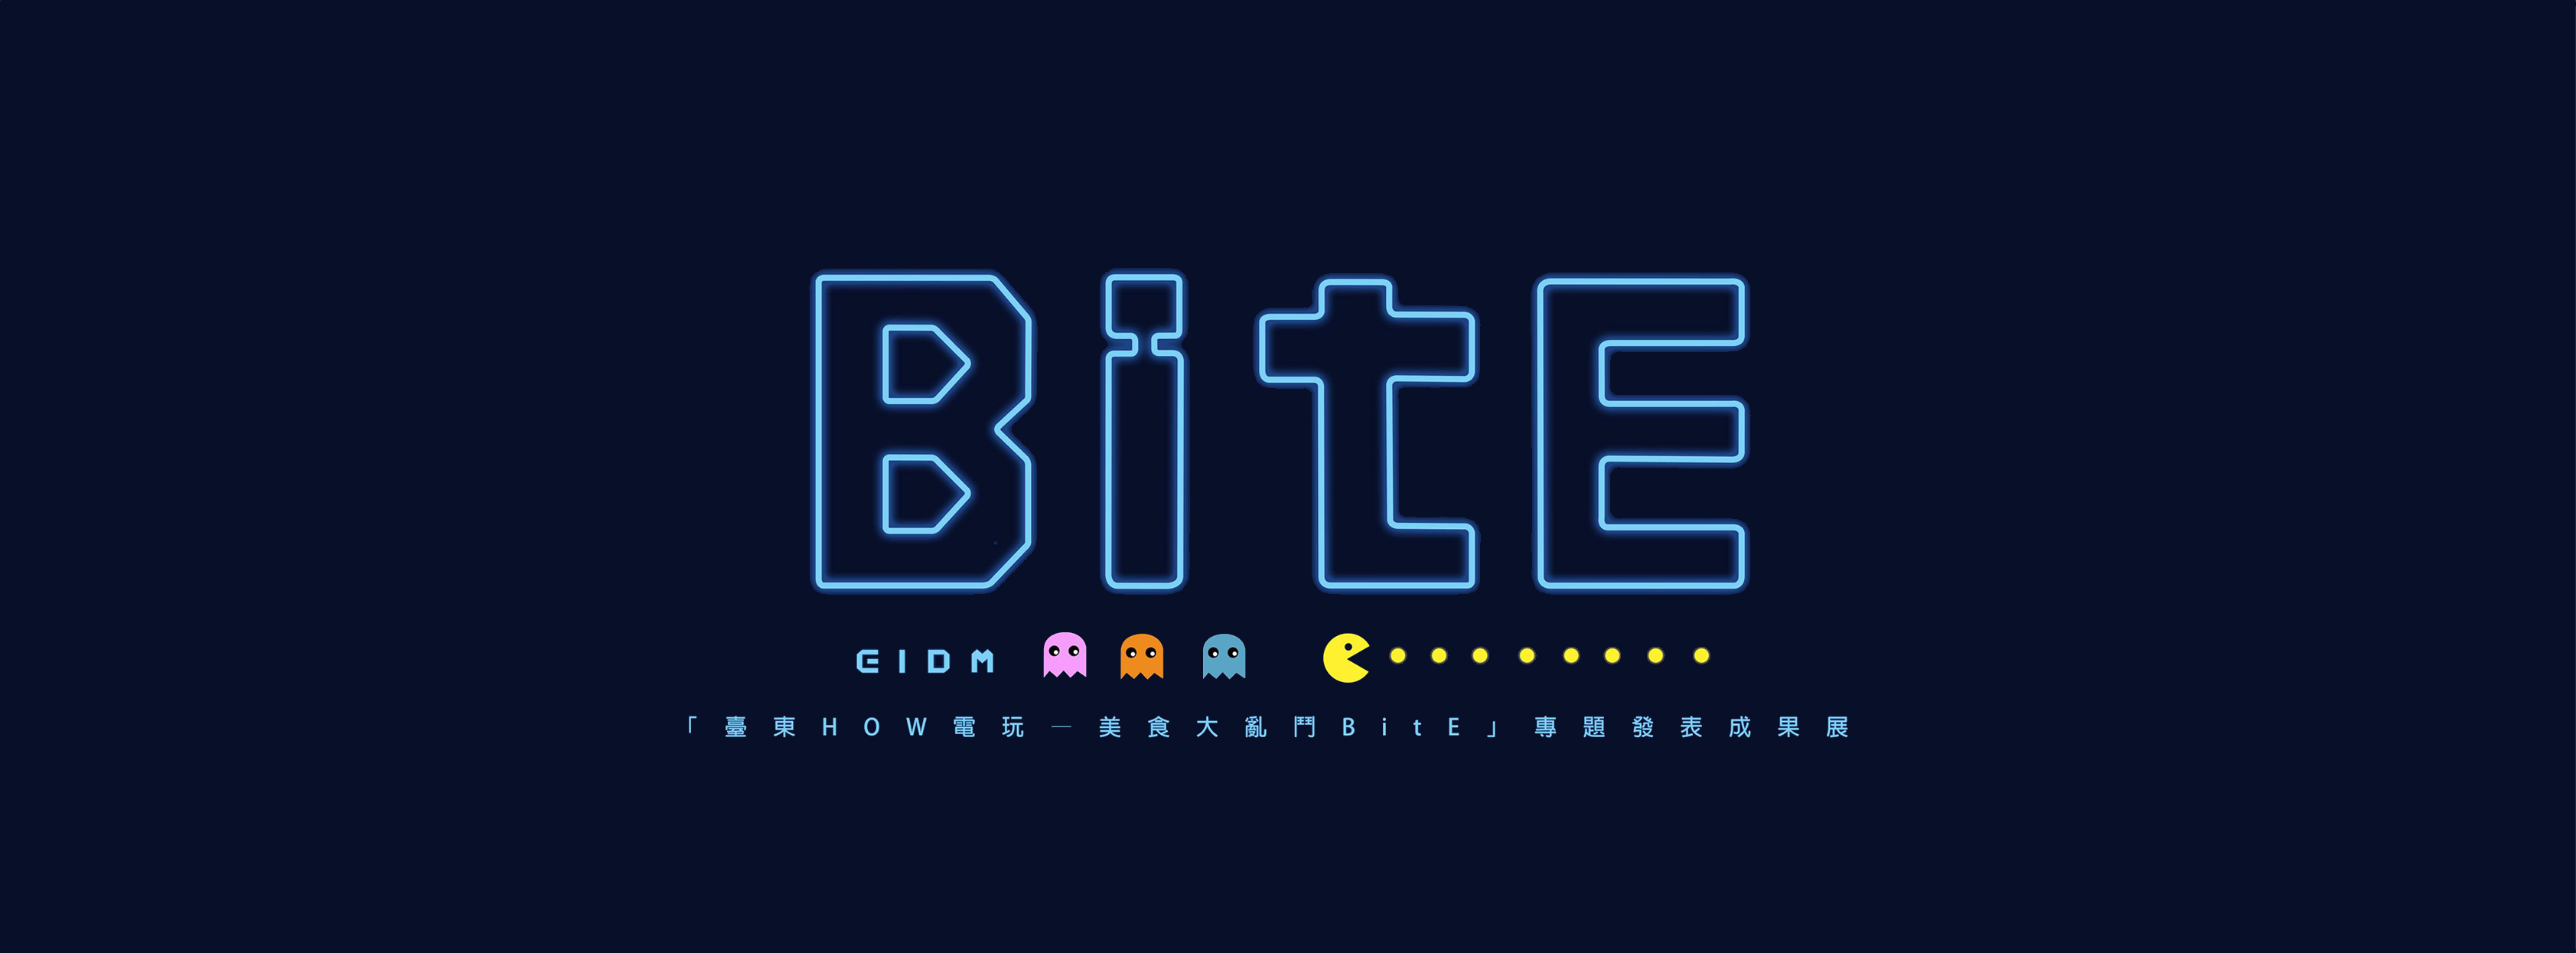 臺東How電玩-Bite美食大亂鬥